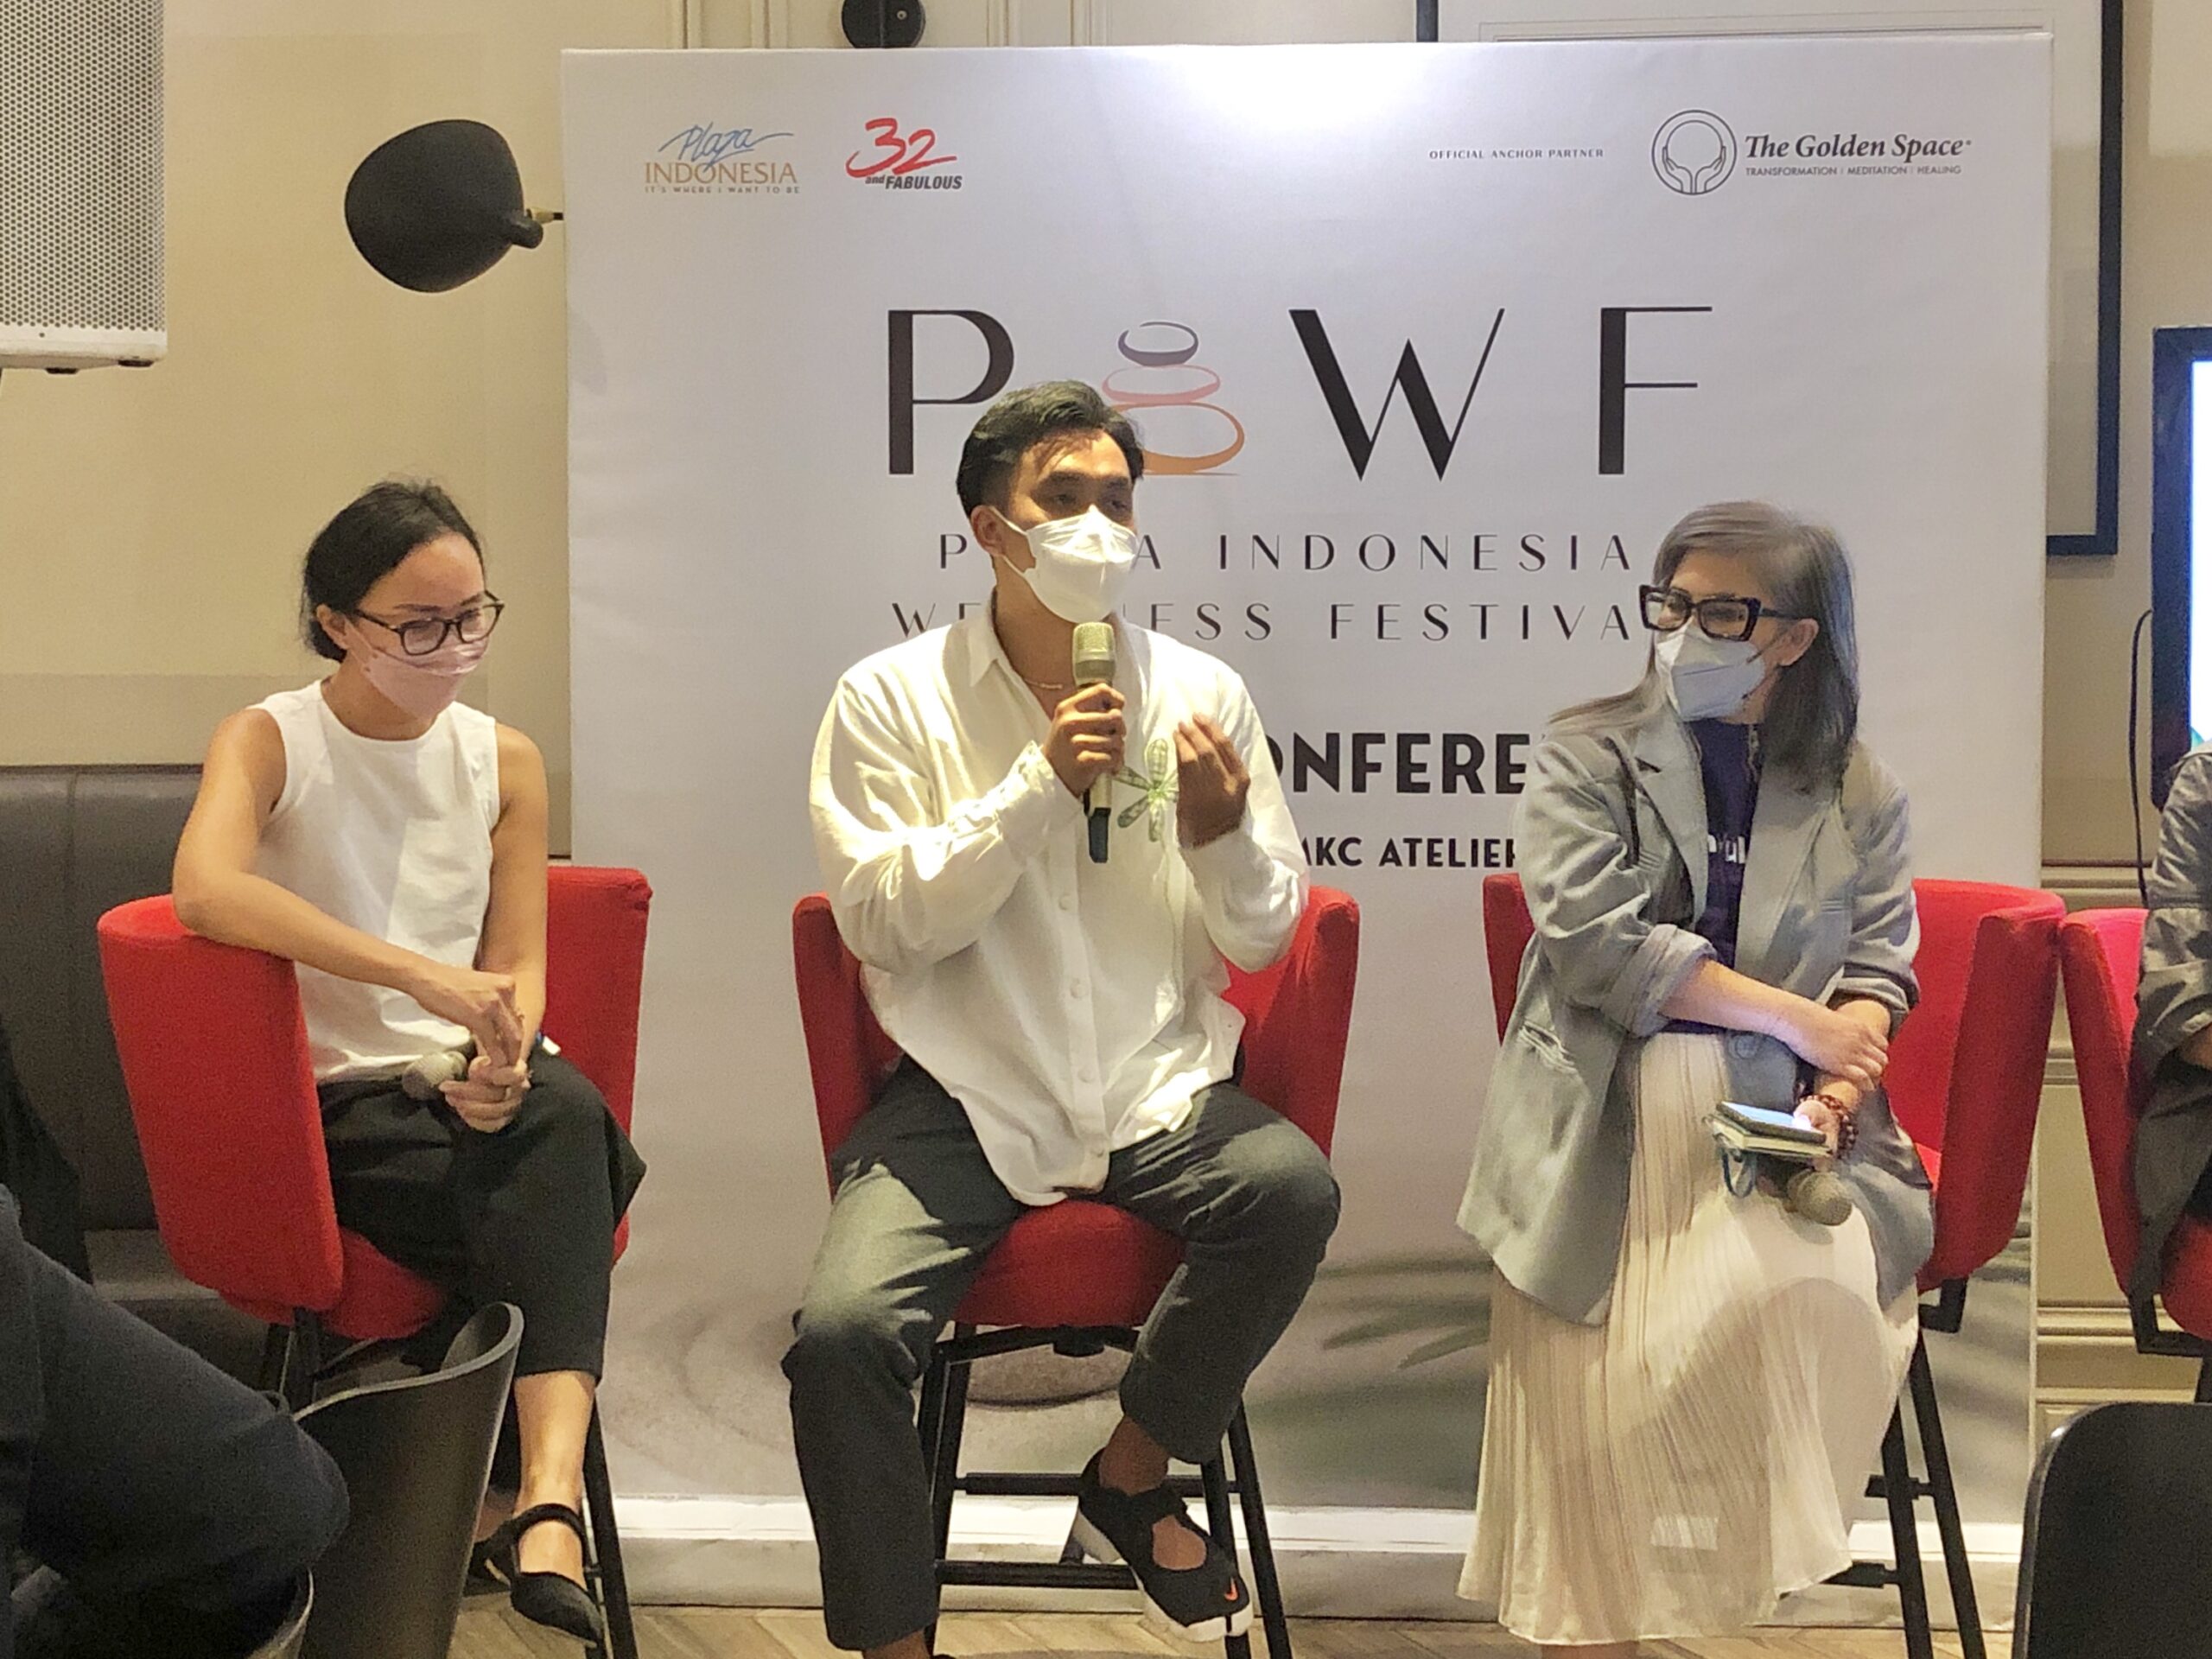 Berfokus Pada Mental Health dan Kebugaran, Plaza Indonesia Hadirkan Wellness Festival